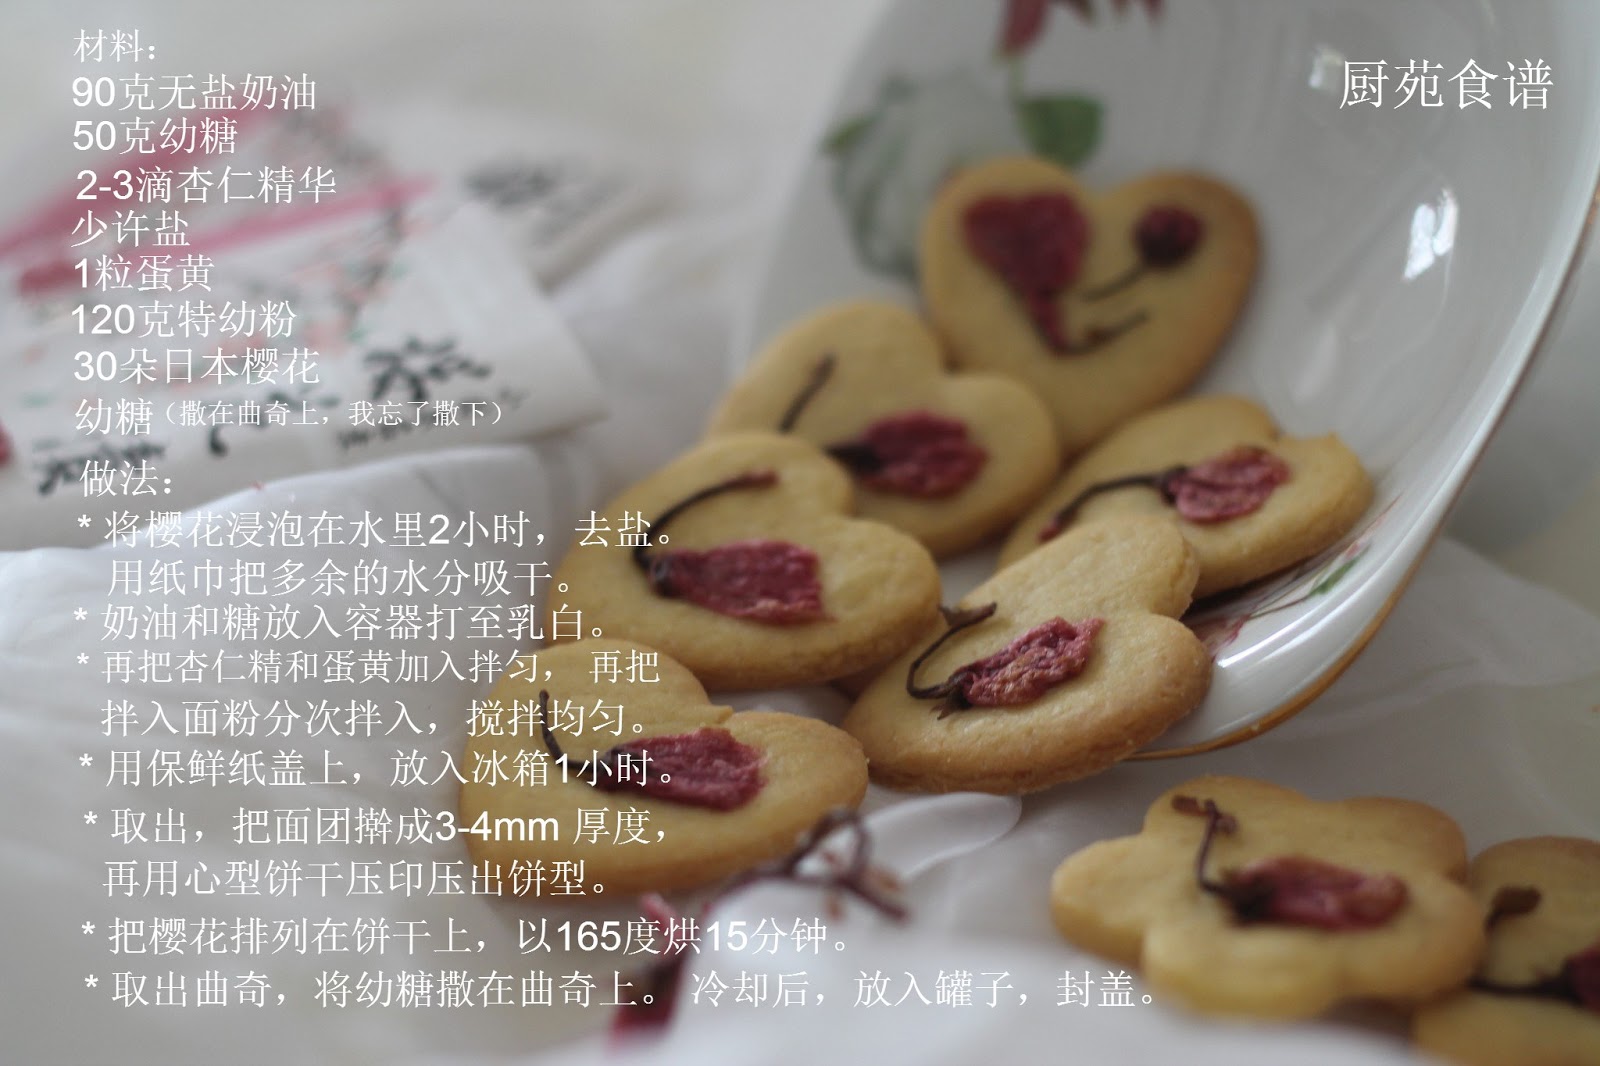 厨苑食谱: 樱花曲奇 （Sakura Cookies）